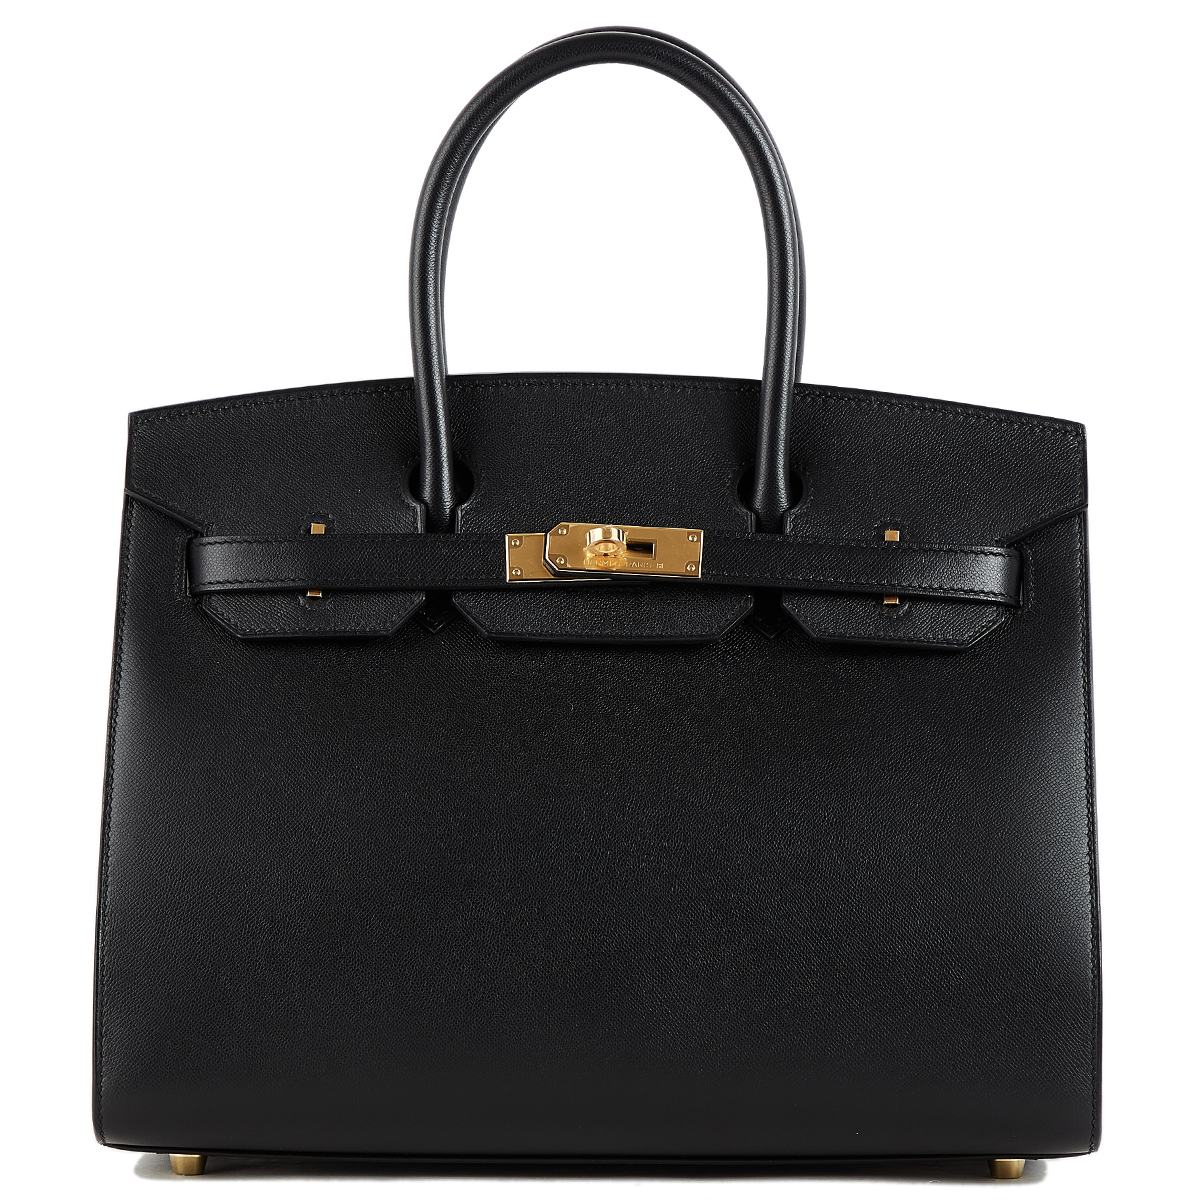 HERMÈS Birkin Sellier 30 handbag in Vert Fizz Epsom leather with Palladium  hardware-Ginza Xiaoma – Authentic Hermès Boutique